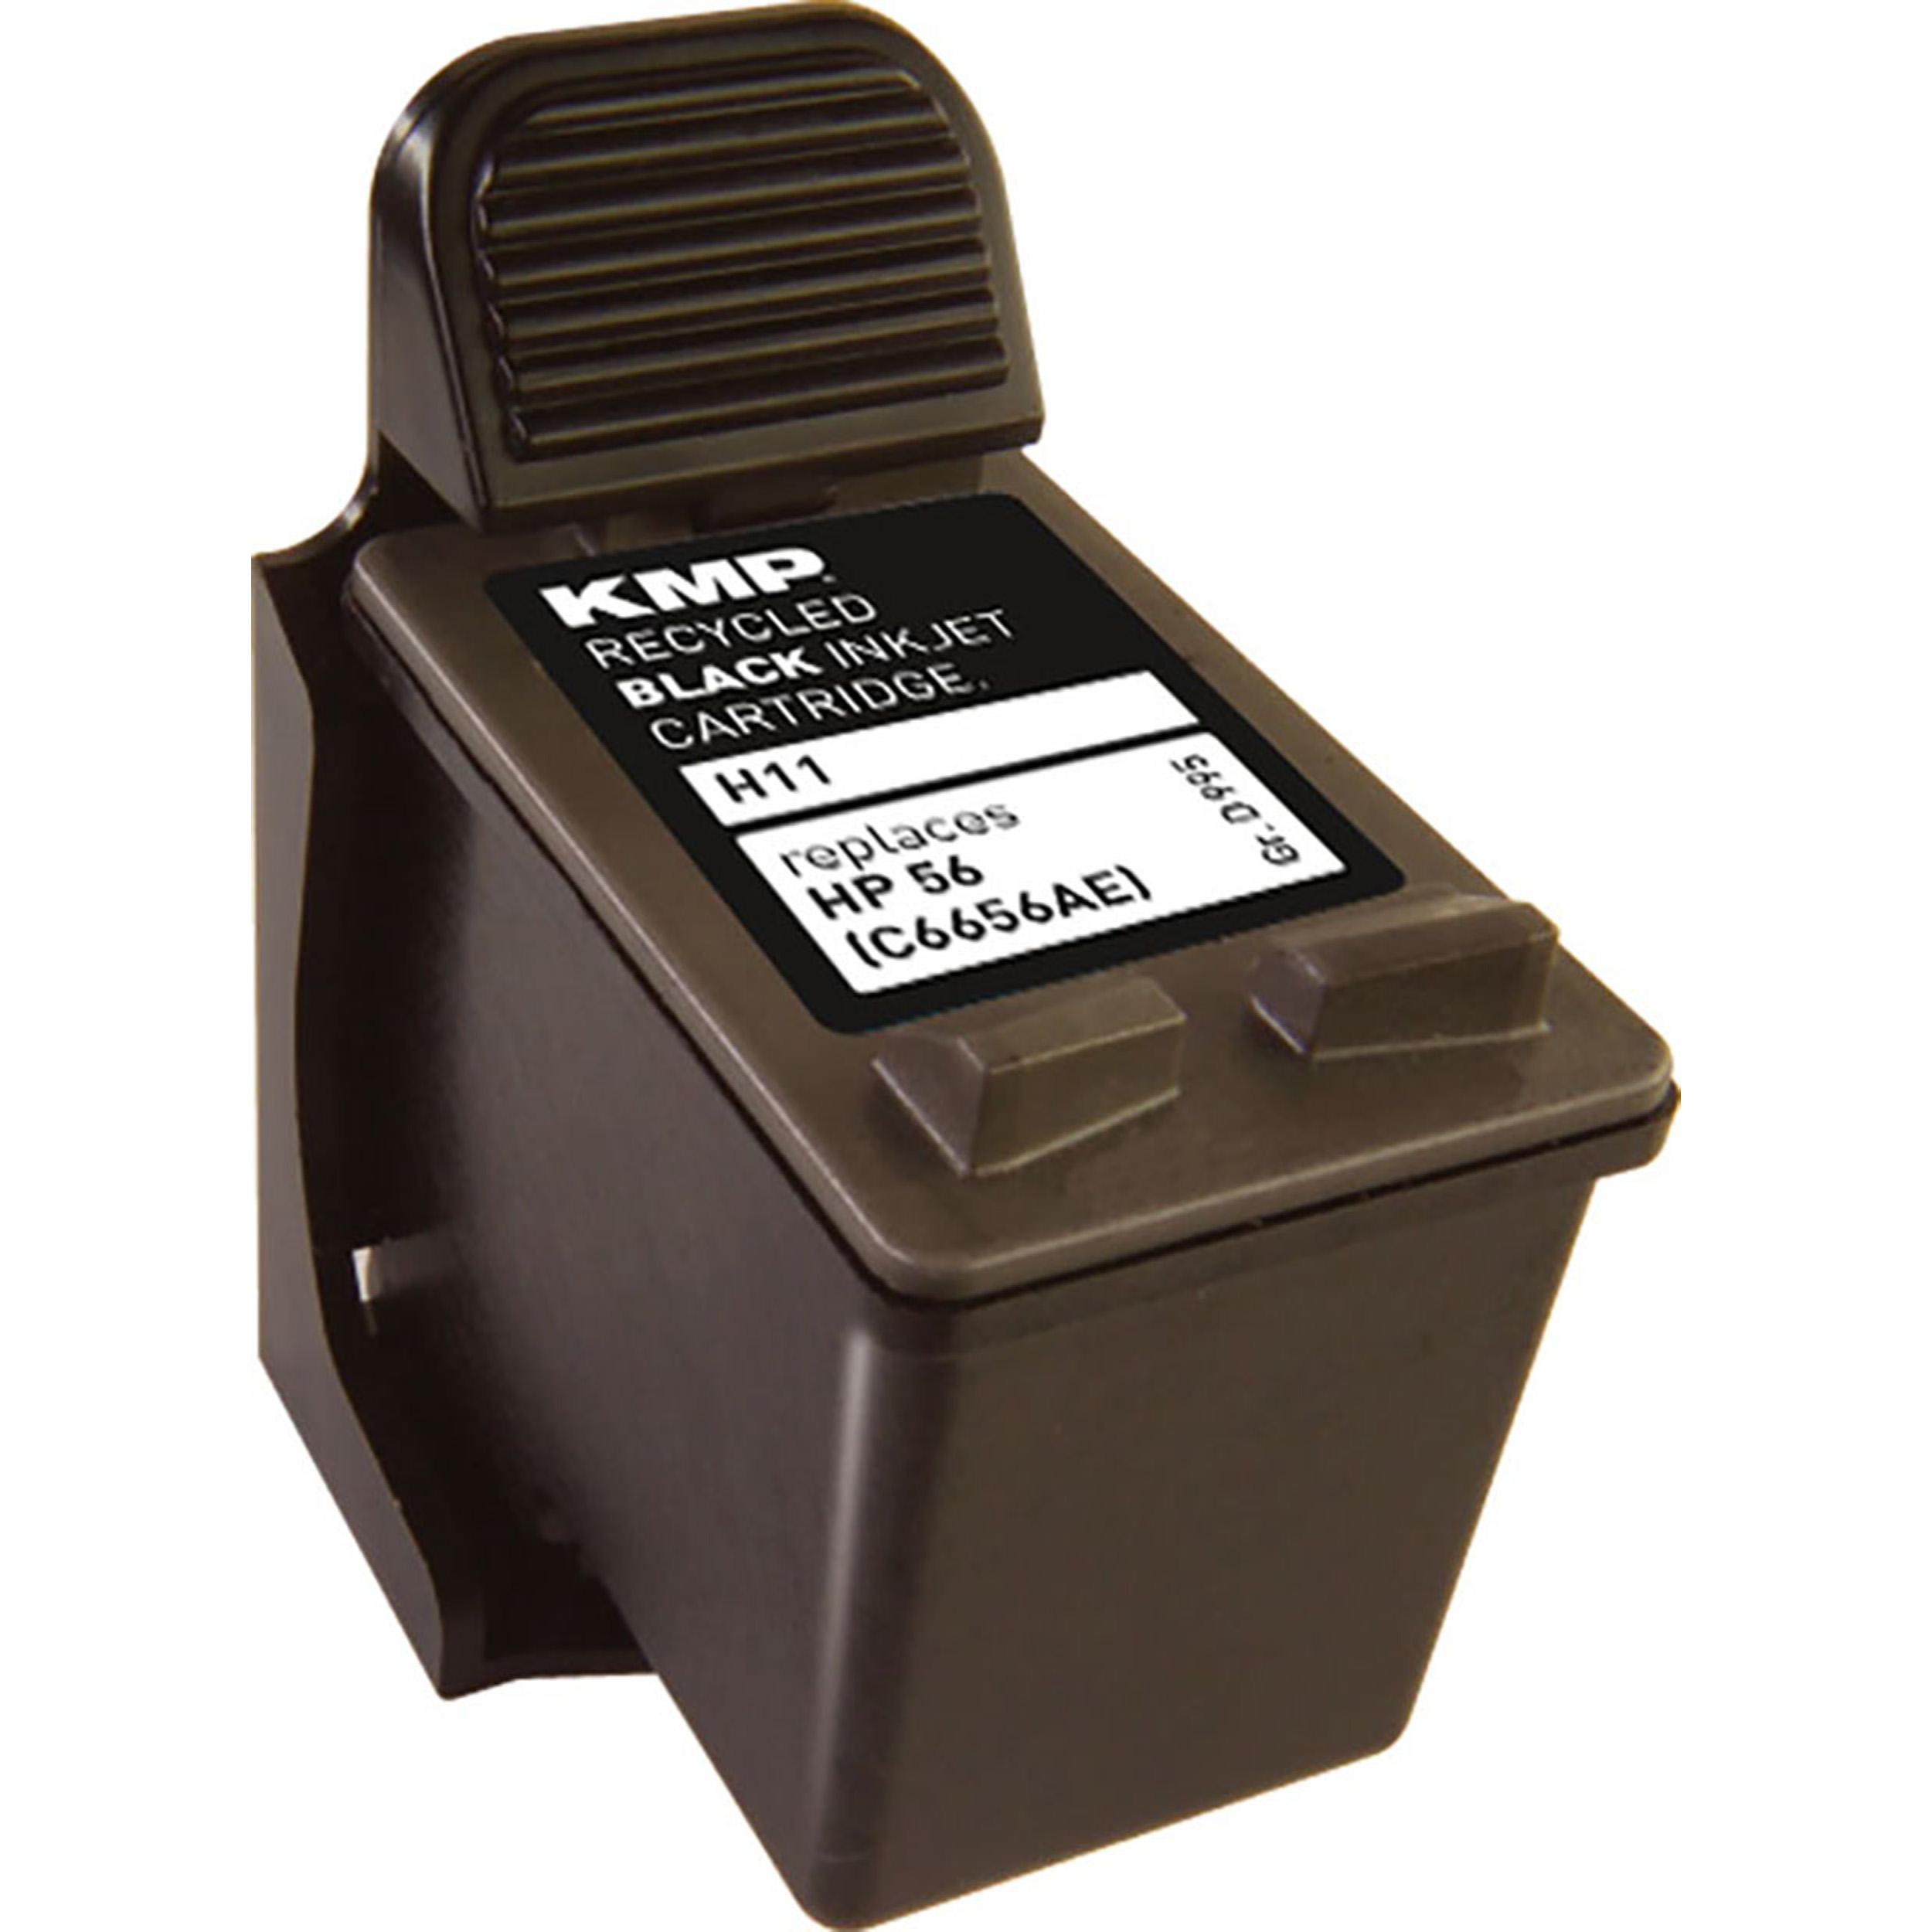 56 Ink KMP Cartridge Tintenpatrone für HP Black schwarz (C6656AE) (C6656AE)